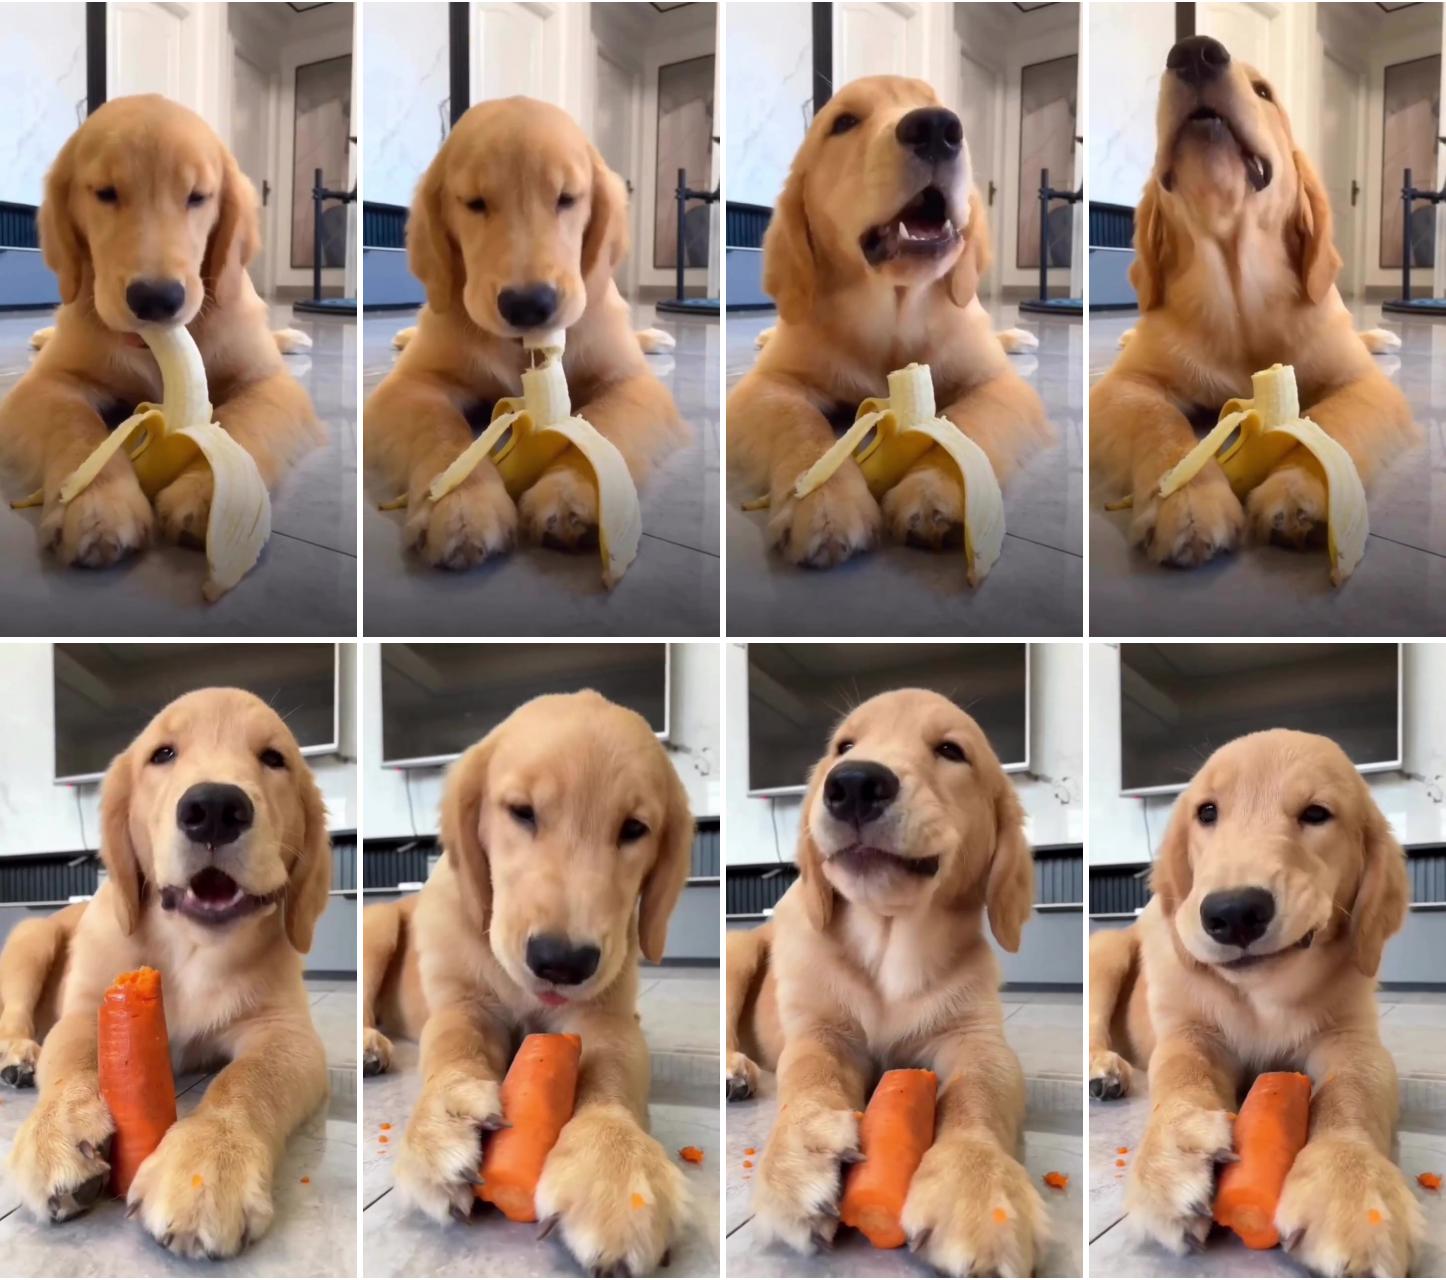 Adorable golden retriever dog eating a banana, adorable golden retriever dog video; dog eating carrot